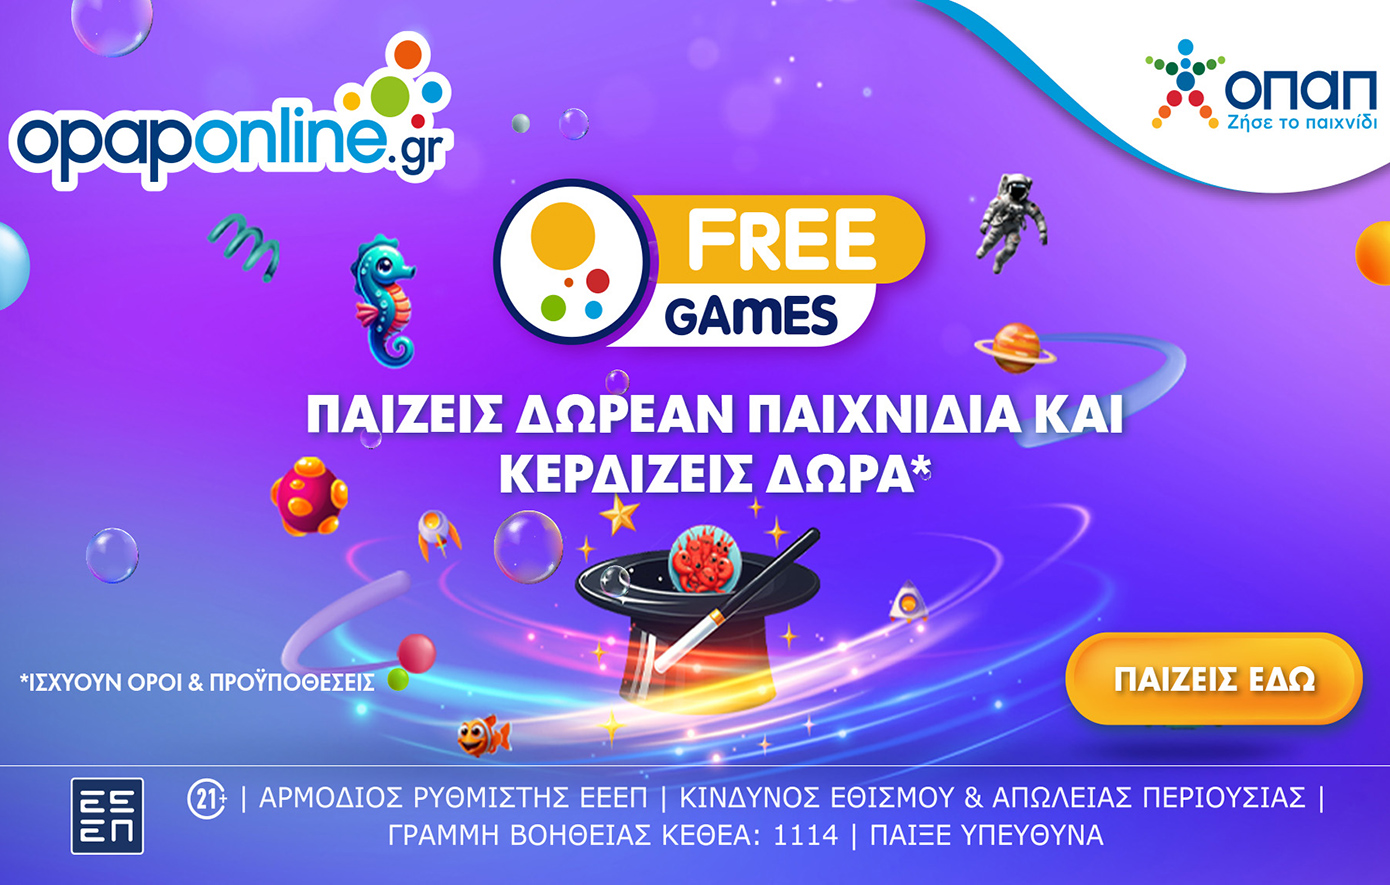 Opaponline.gr: Ήρθαν τα αποκλειστικά δωρεάν παιχνίδια με σούπερ δώρα*